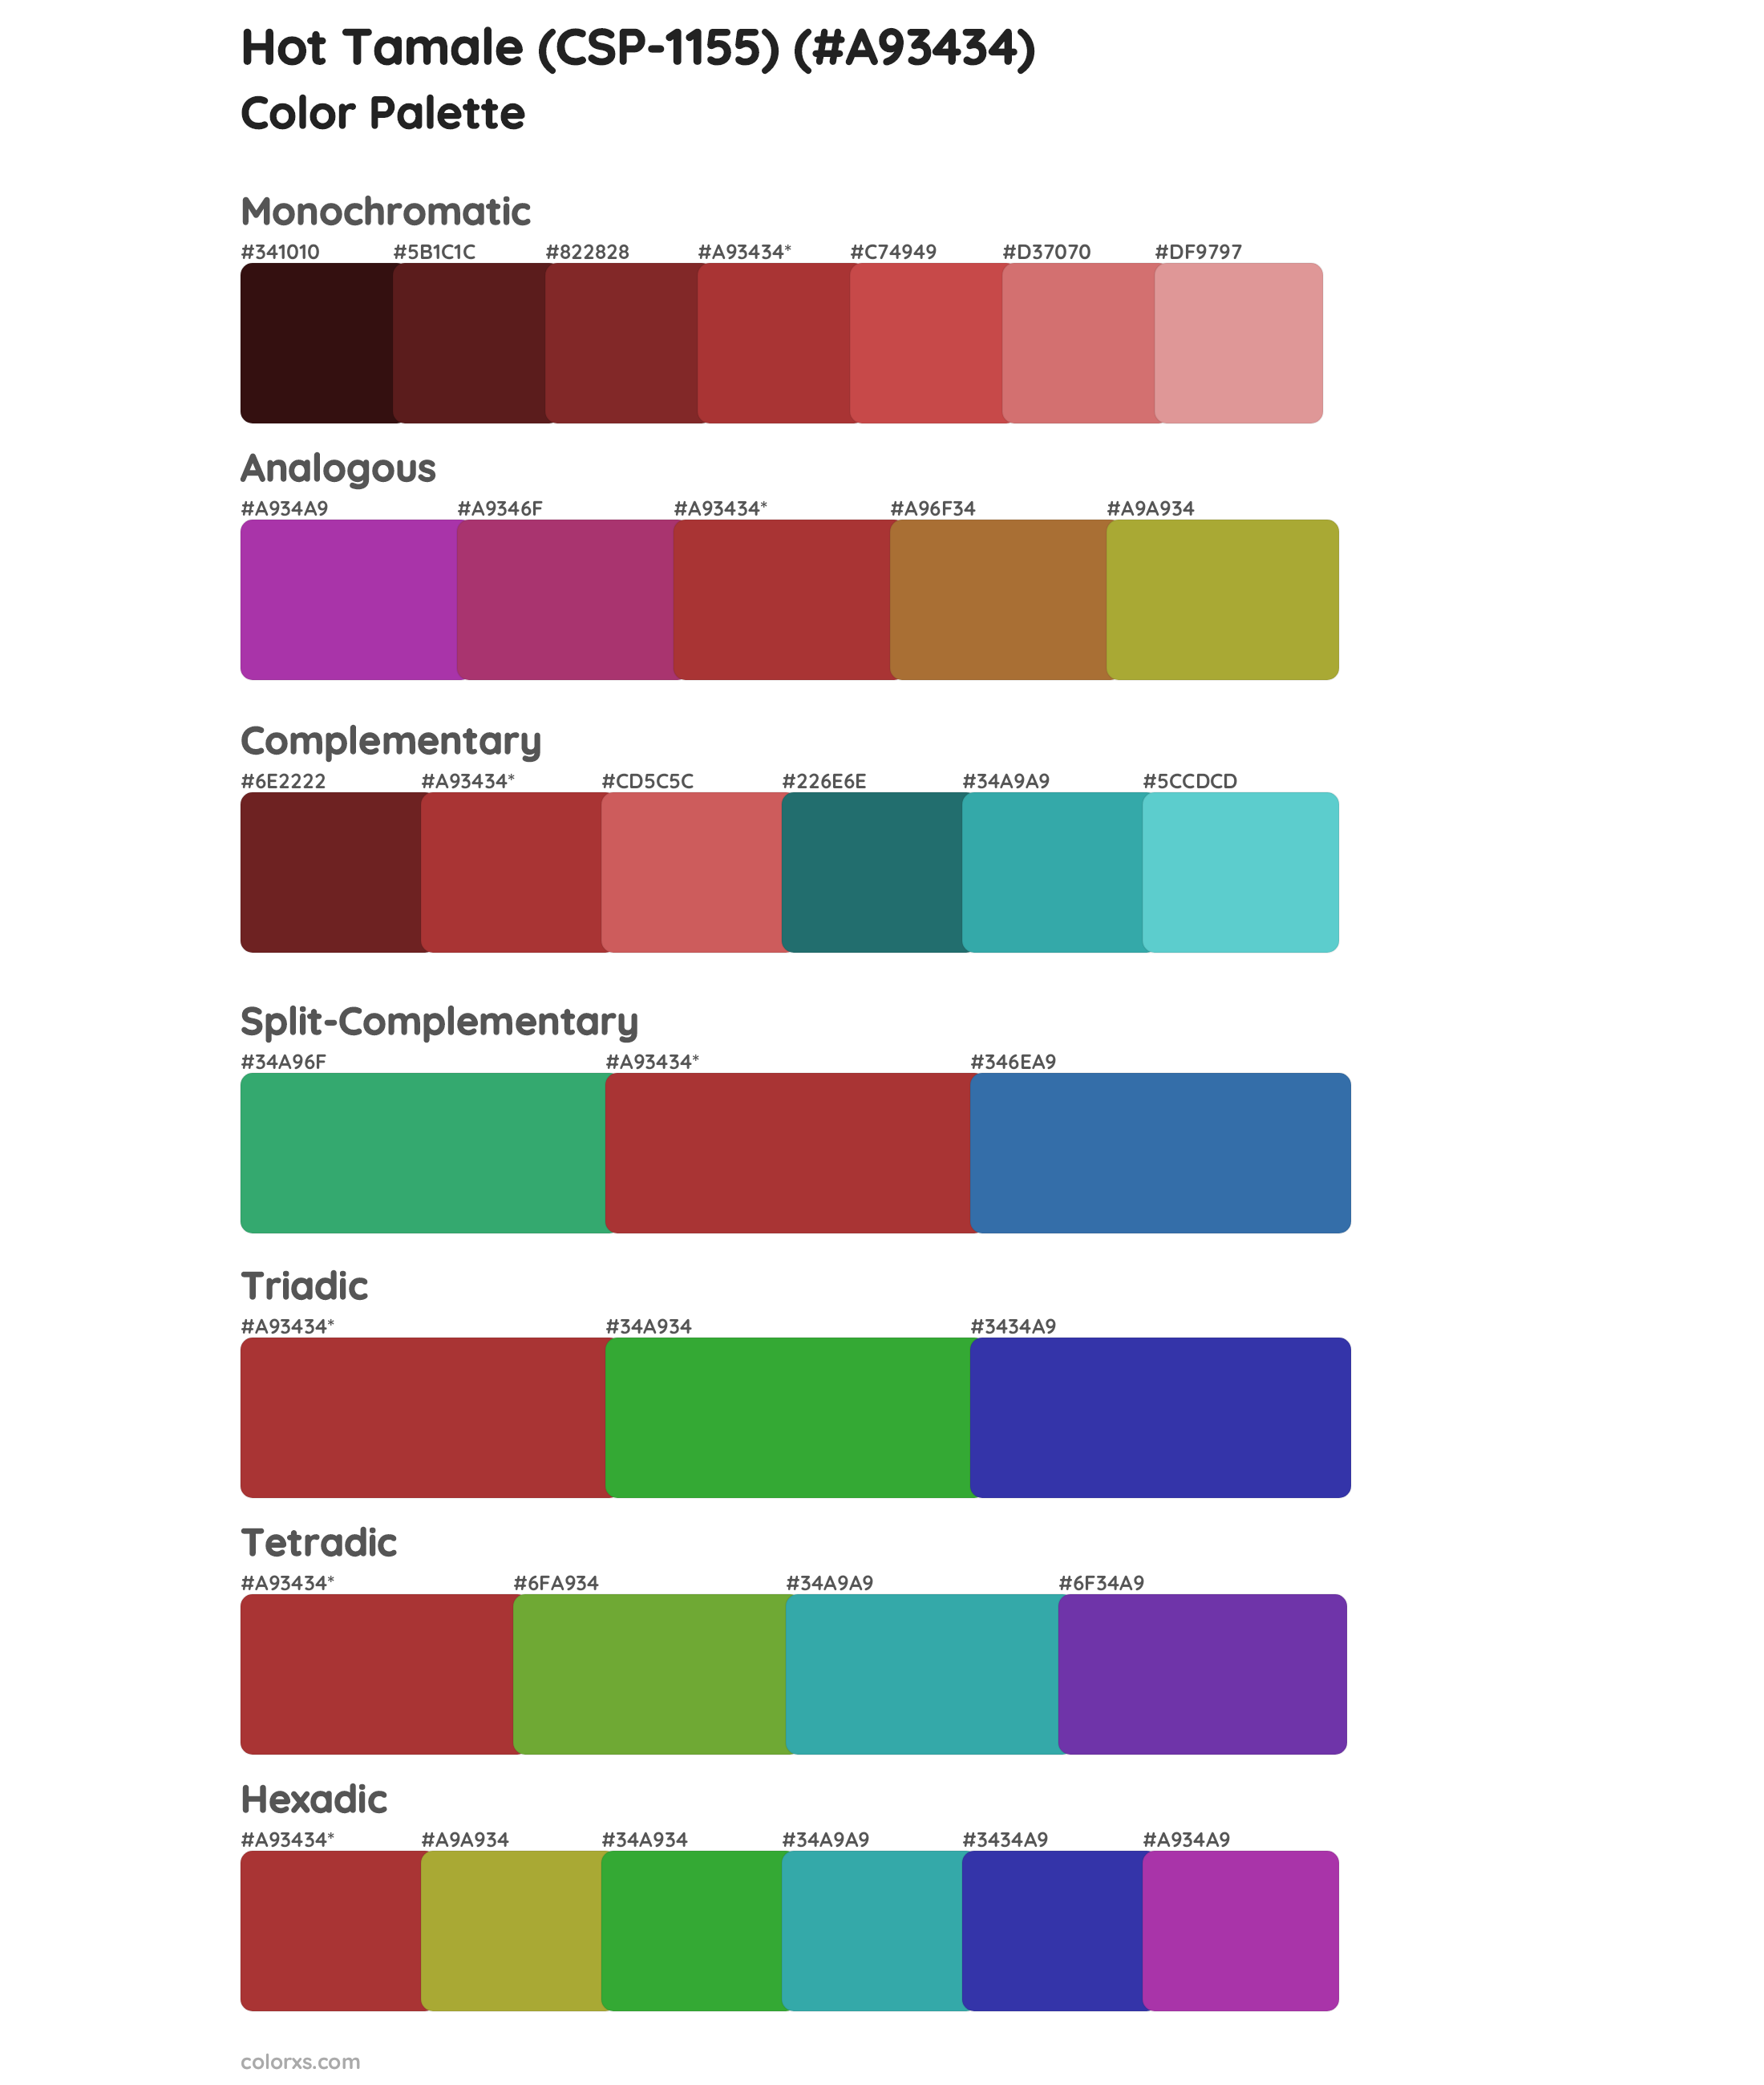 Hot Tamale (CSP-1155) Color Scheme Palettes